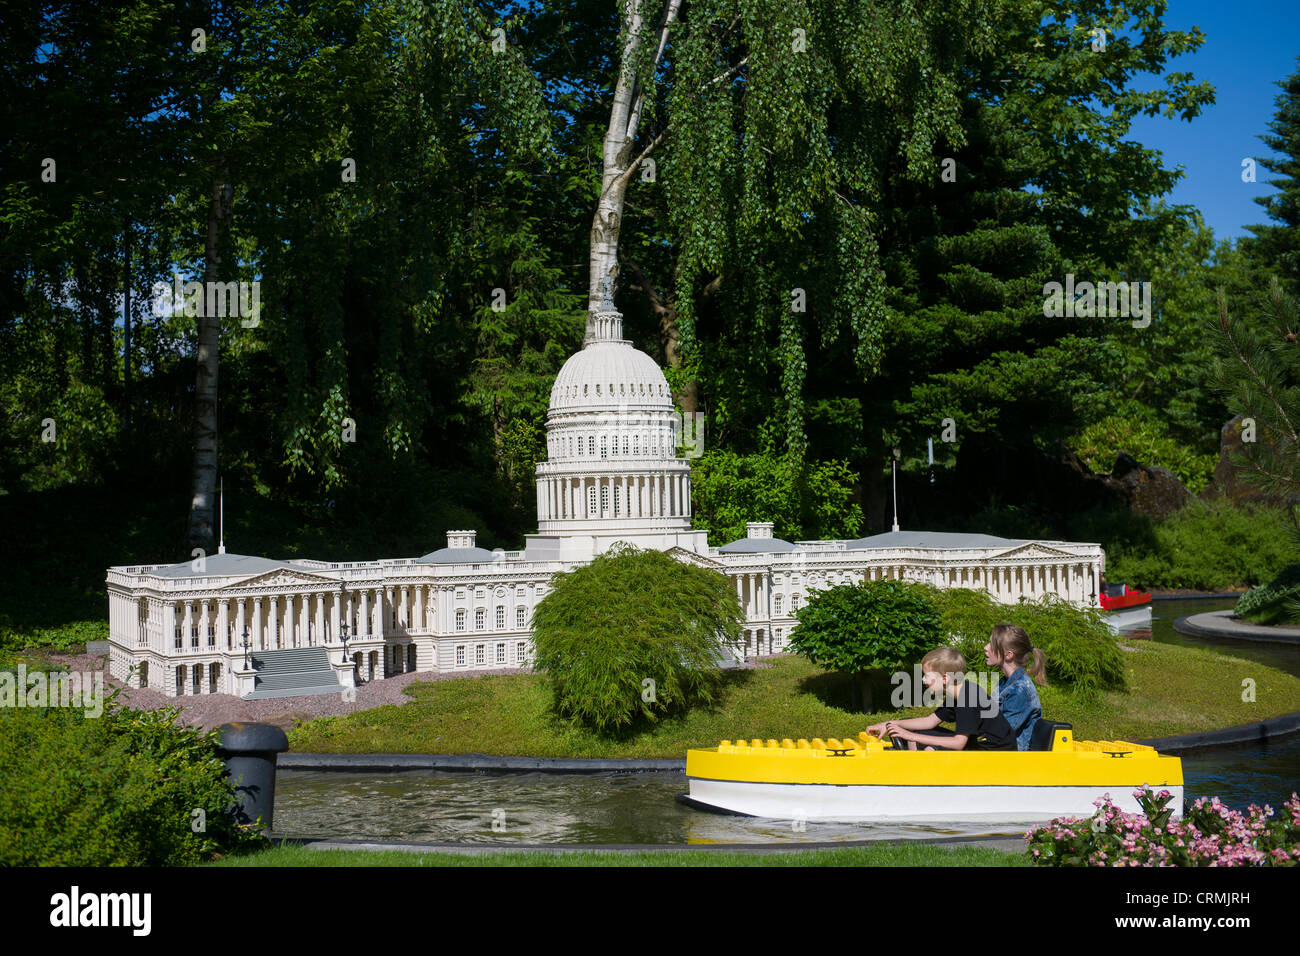 Enfants sur Miniboat passant modèle Lego de l'United States Capitol Building, Legoland, BILLUND, Danemark Banque D'Images